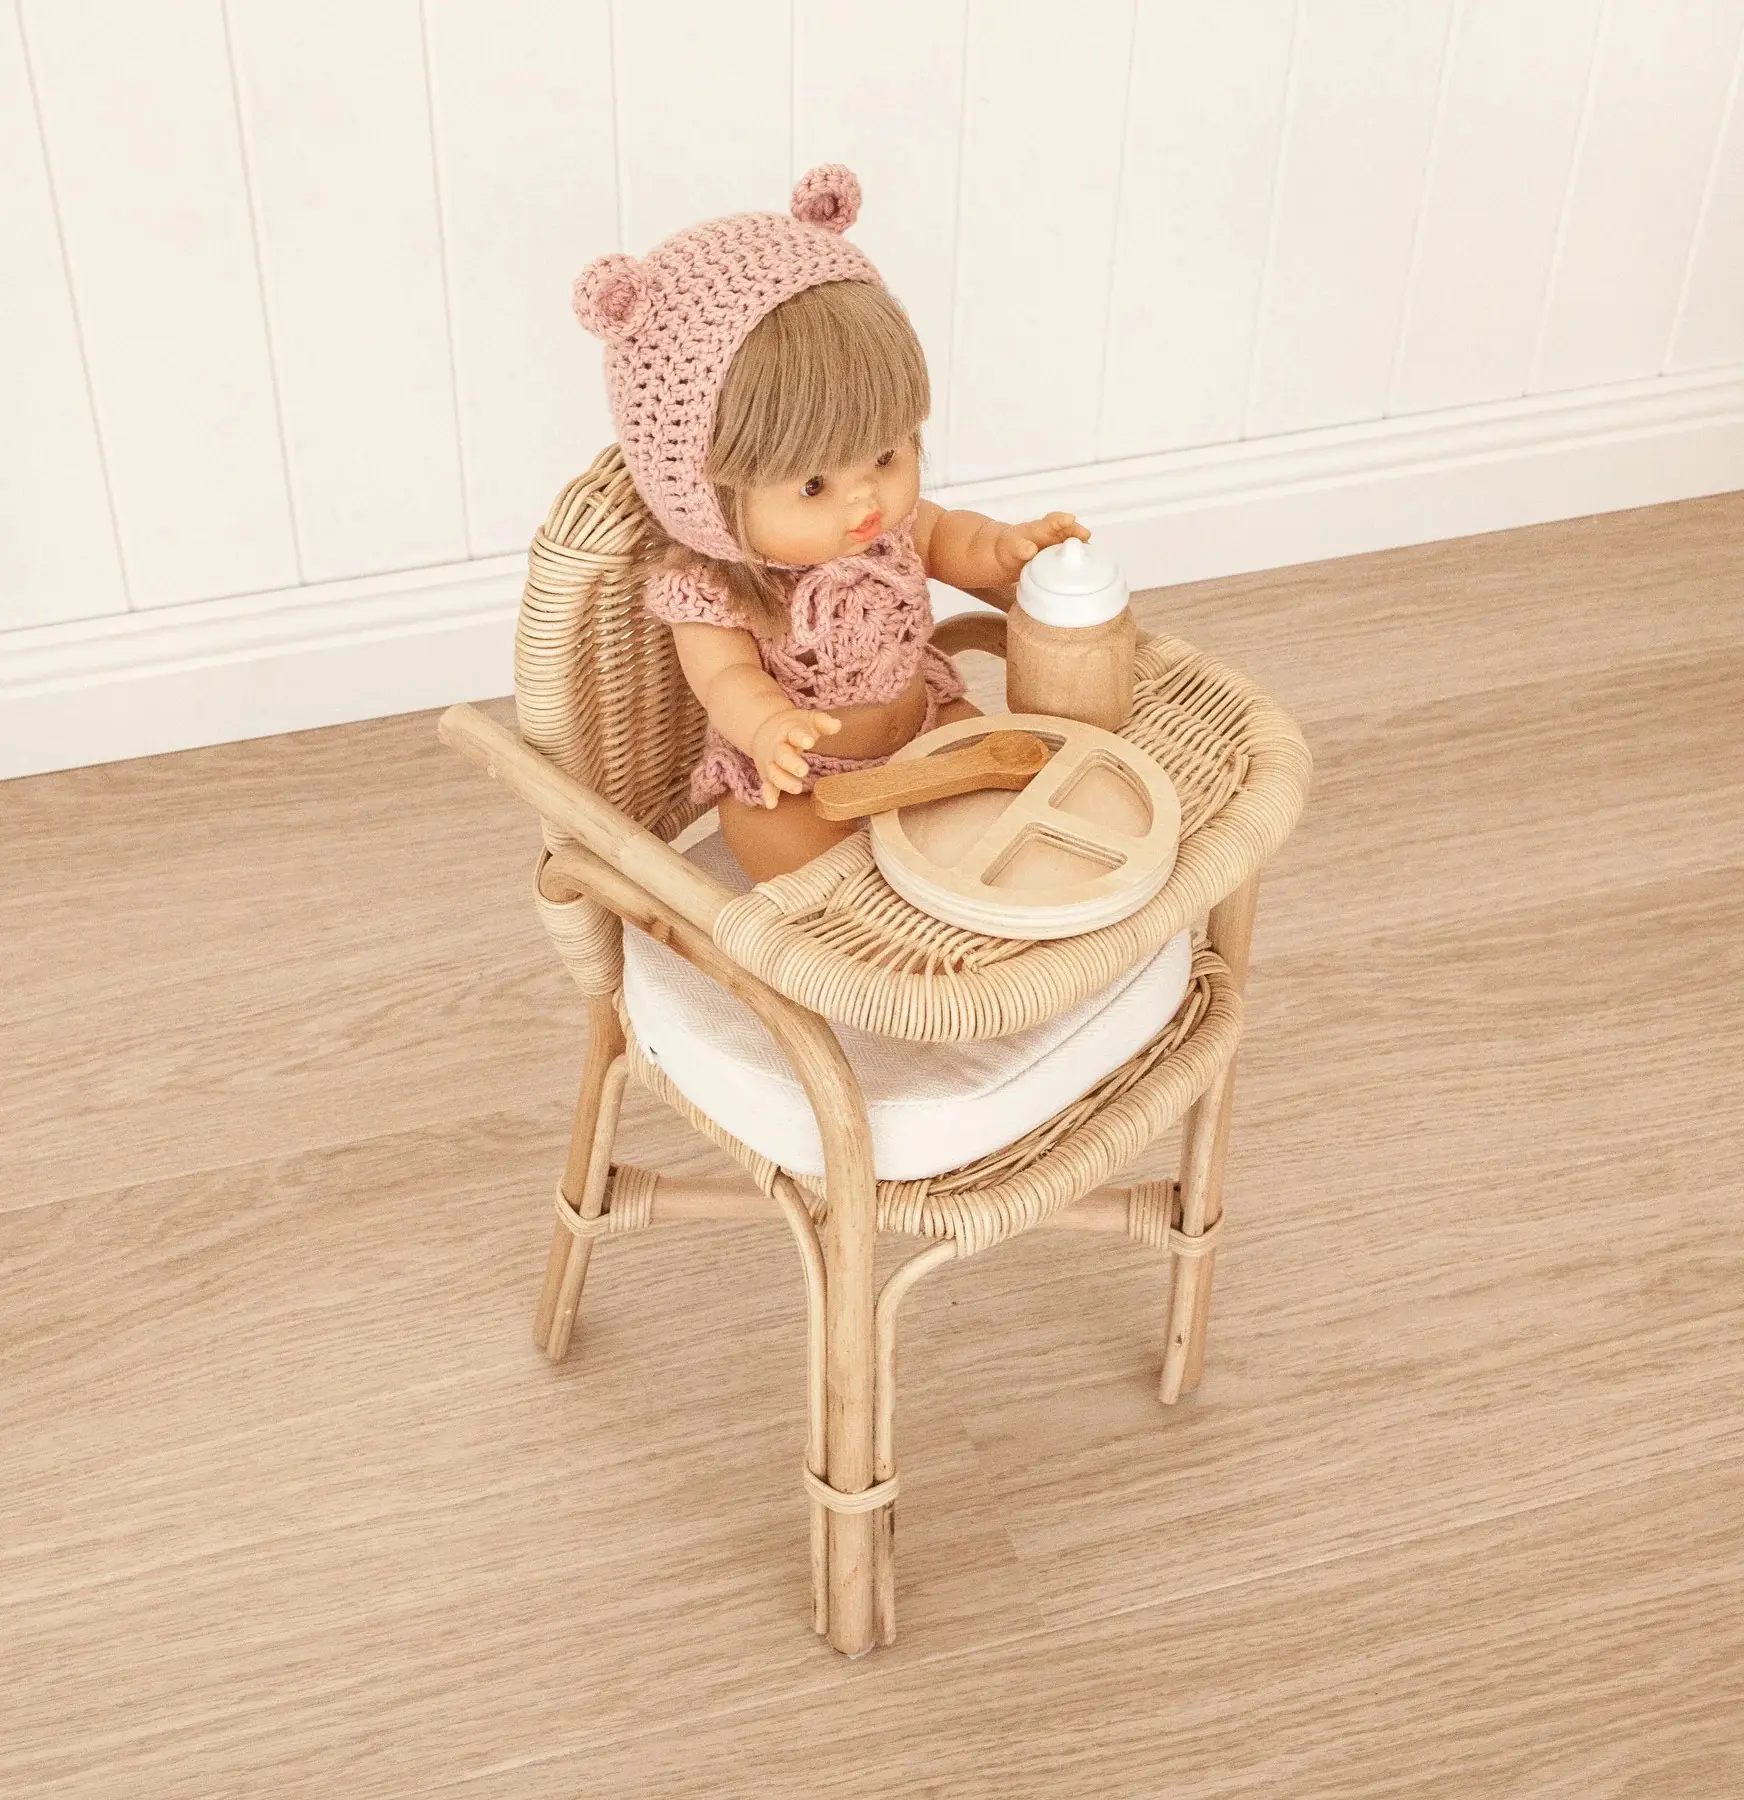 아기가 앉아서 먹기 위해 사용되는 인형 높은 의자 또는 장난감, 가정 장식, 안전하고 친절한 천연 등나무에서 수제.